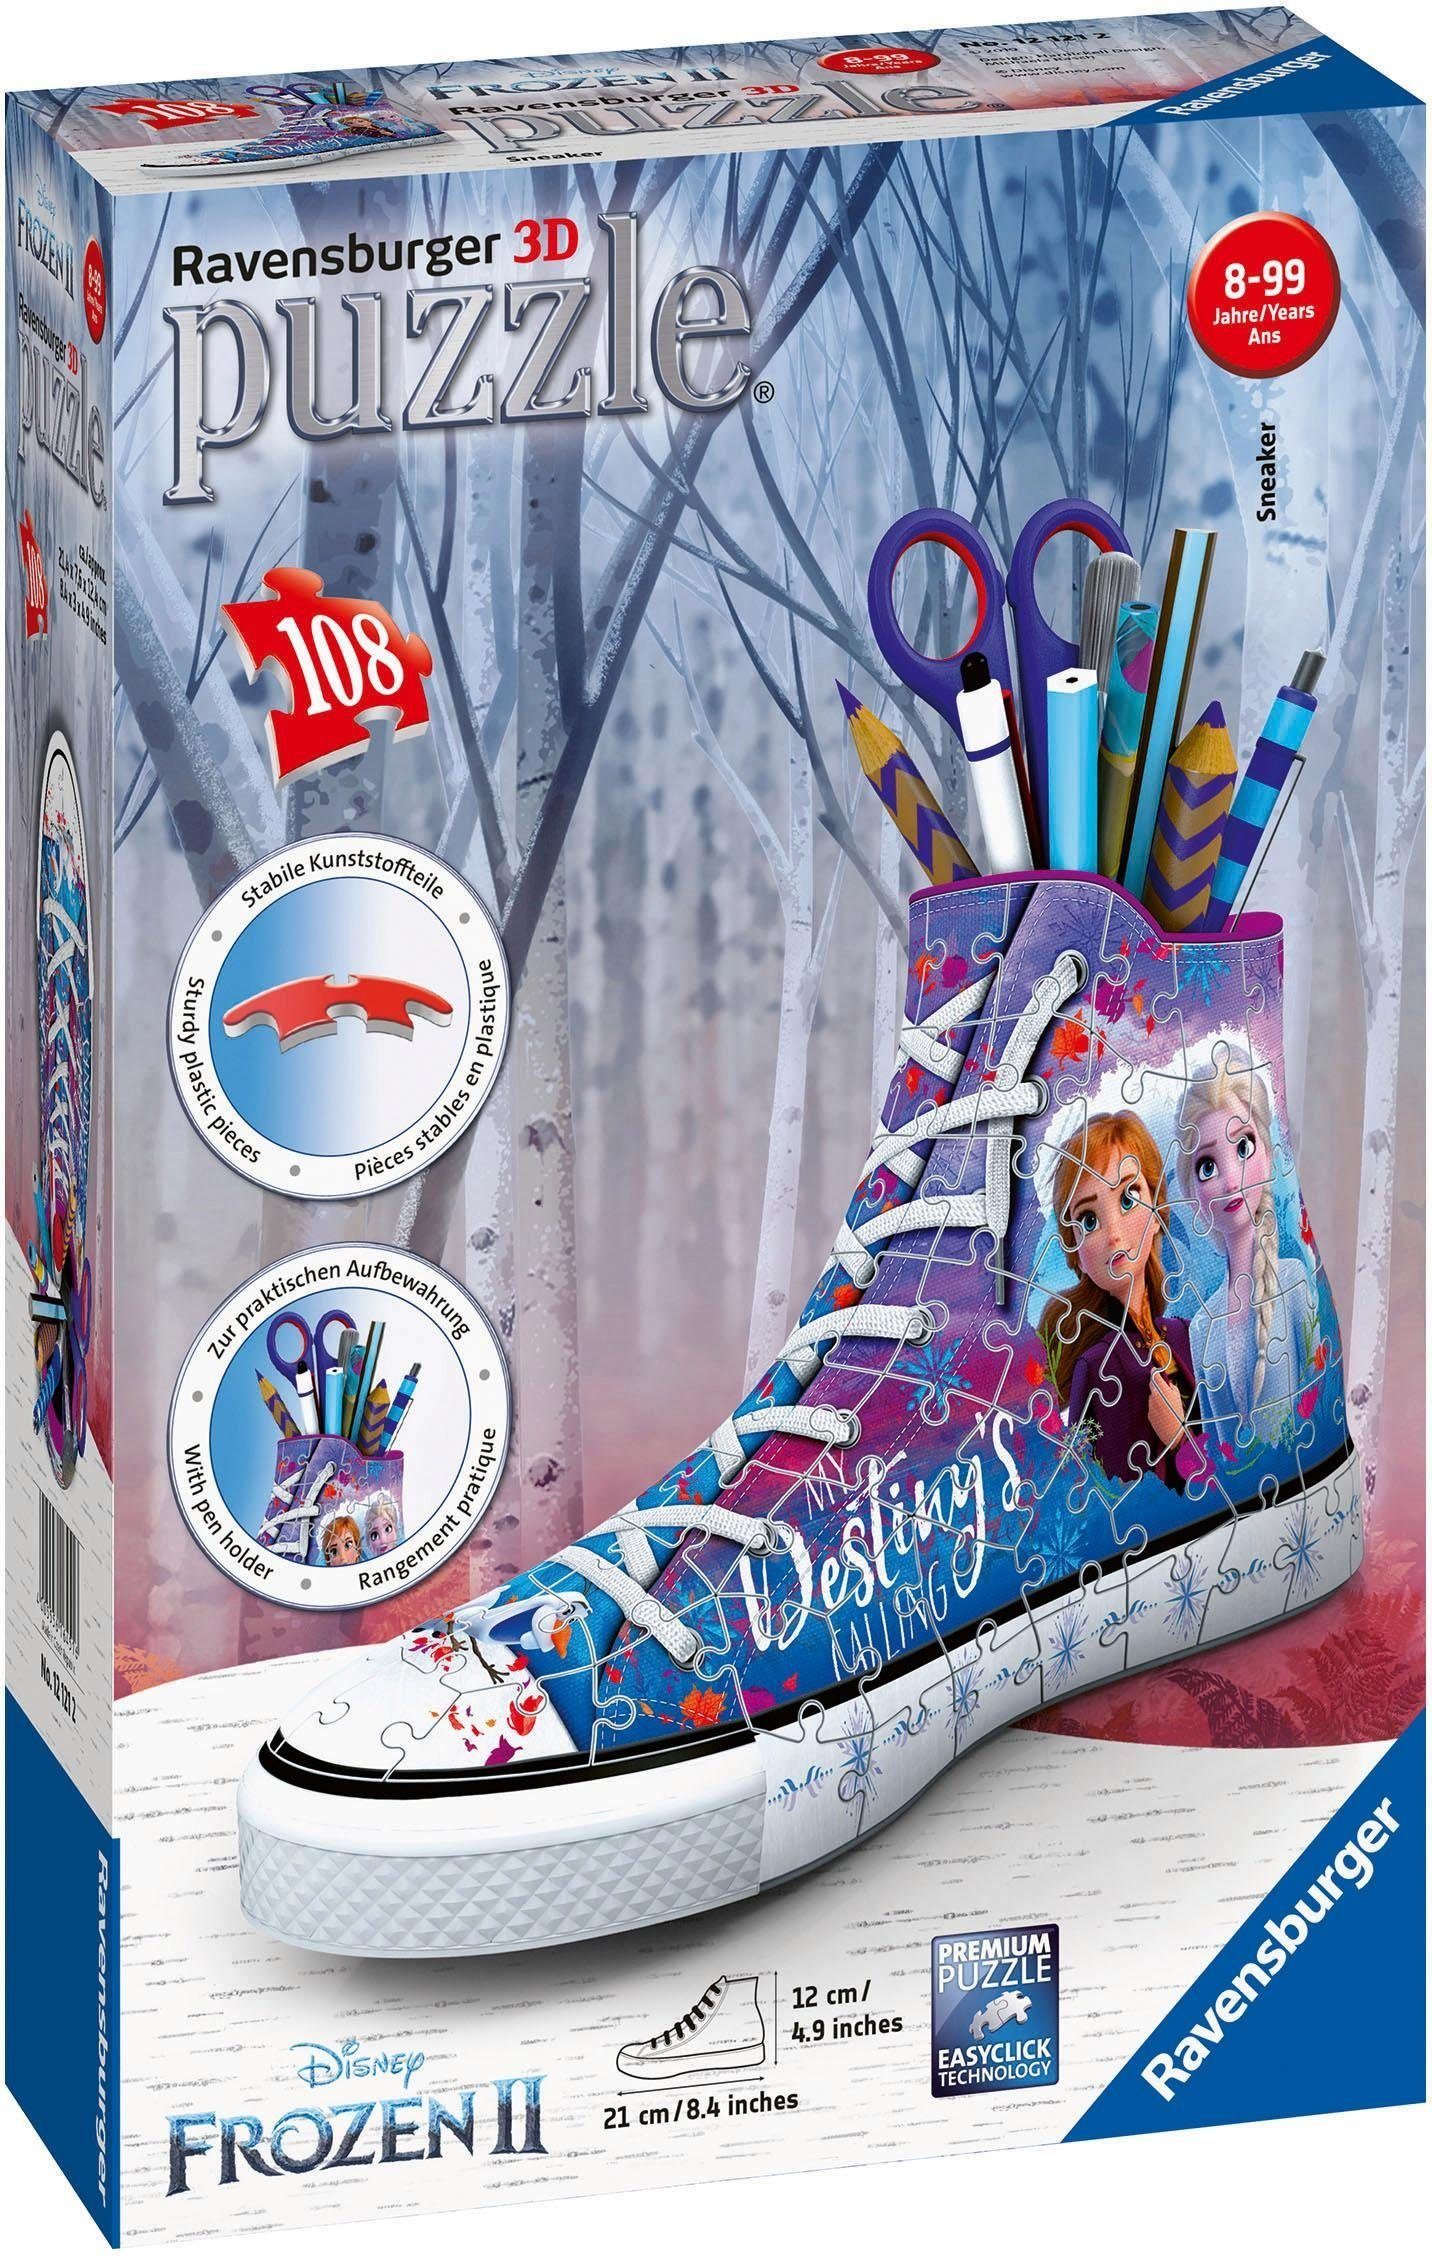 Ravensburger 3D-Puzzle Sneaker, schützt Disney weltweit 108 Europe, Frozen Wald - II, in Made - Puzzleteile, FSC®